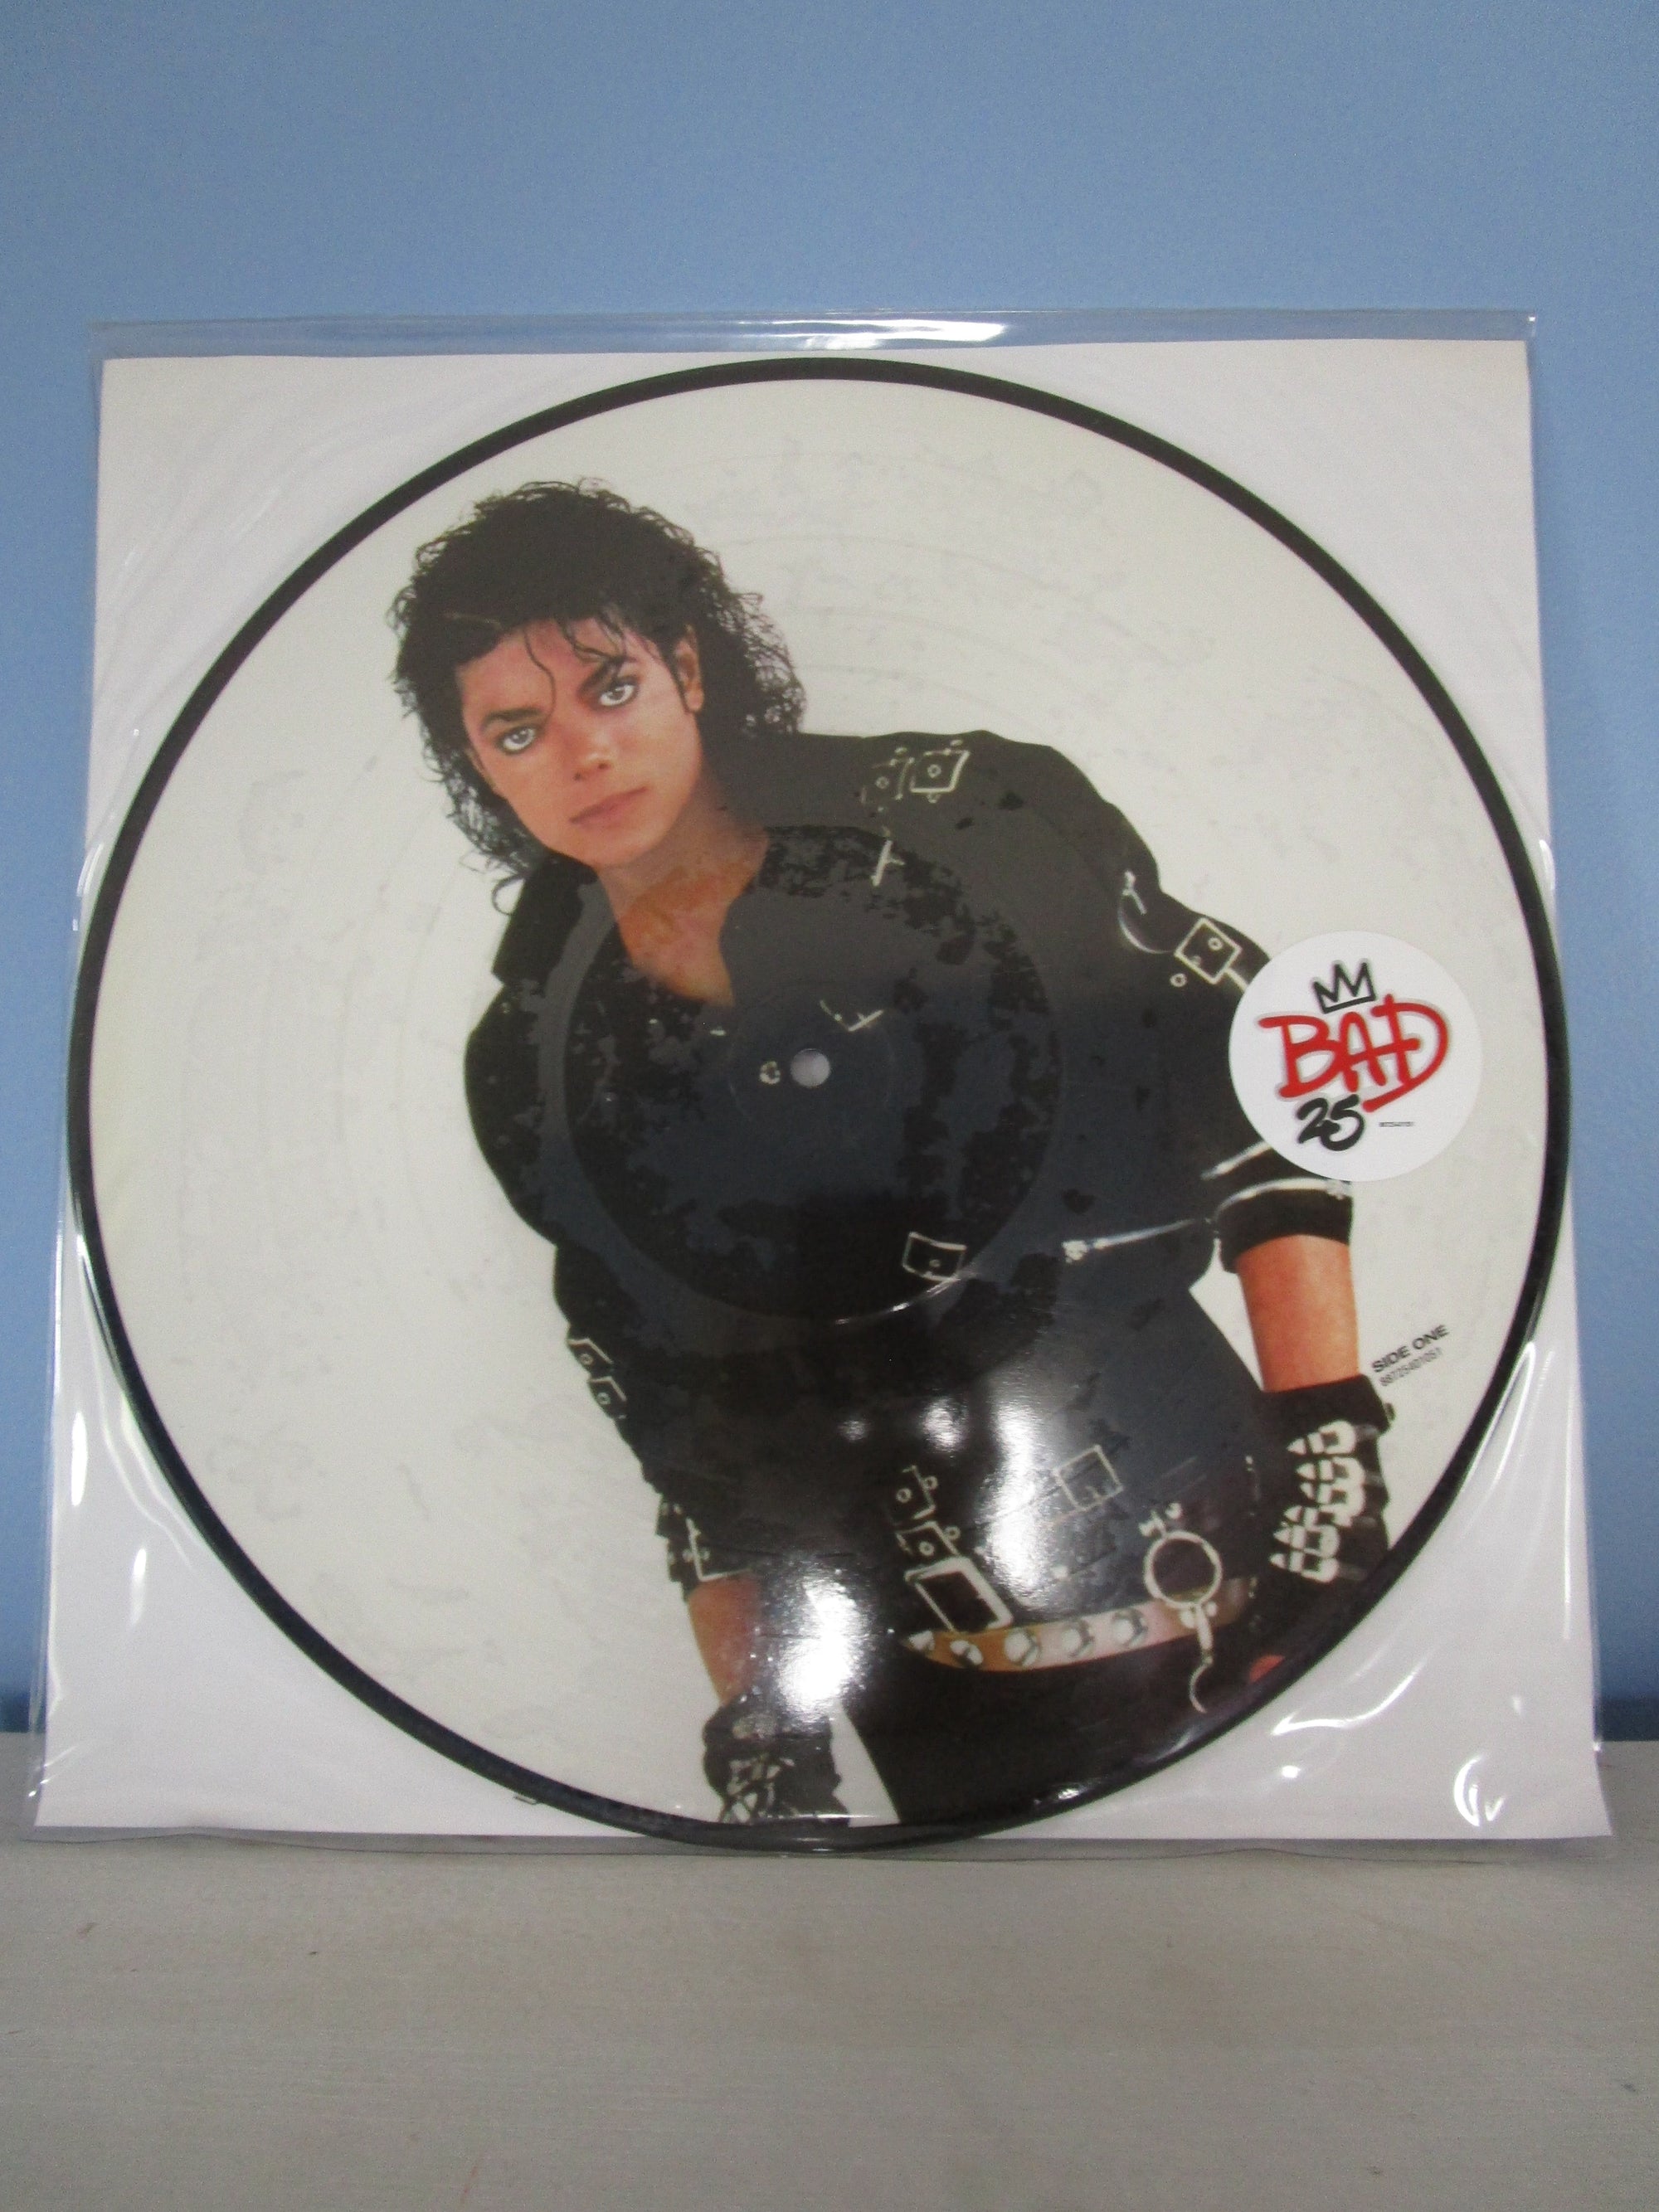 Michael Jackson Italian L'Espresso/La Repubblica Vintage Box Set with -  MJJCollectors_Store